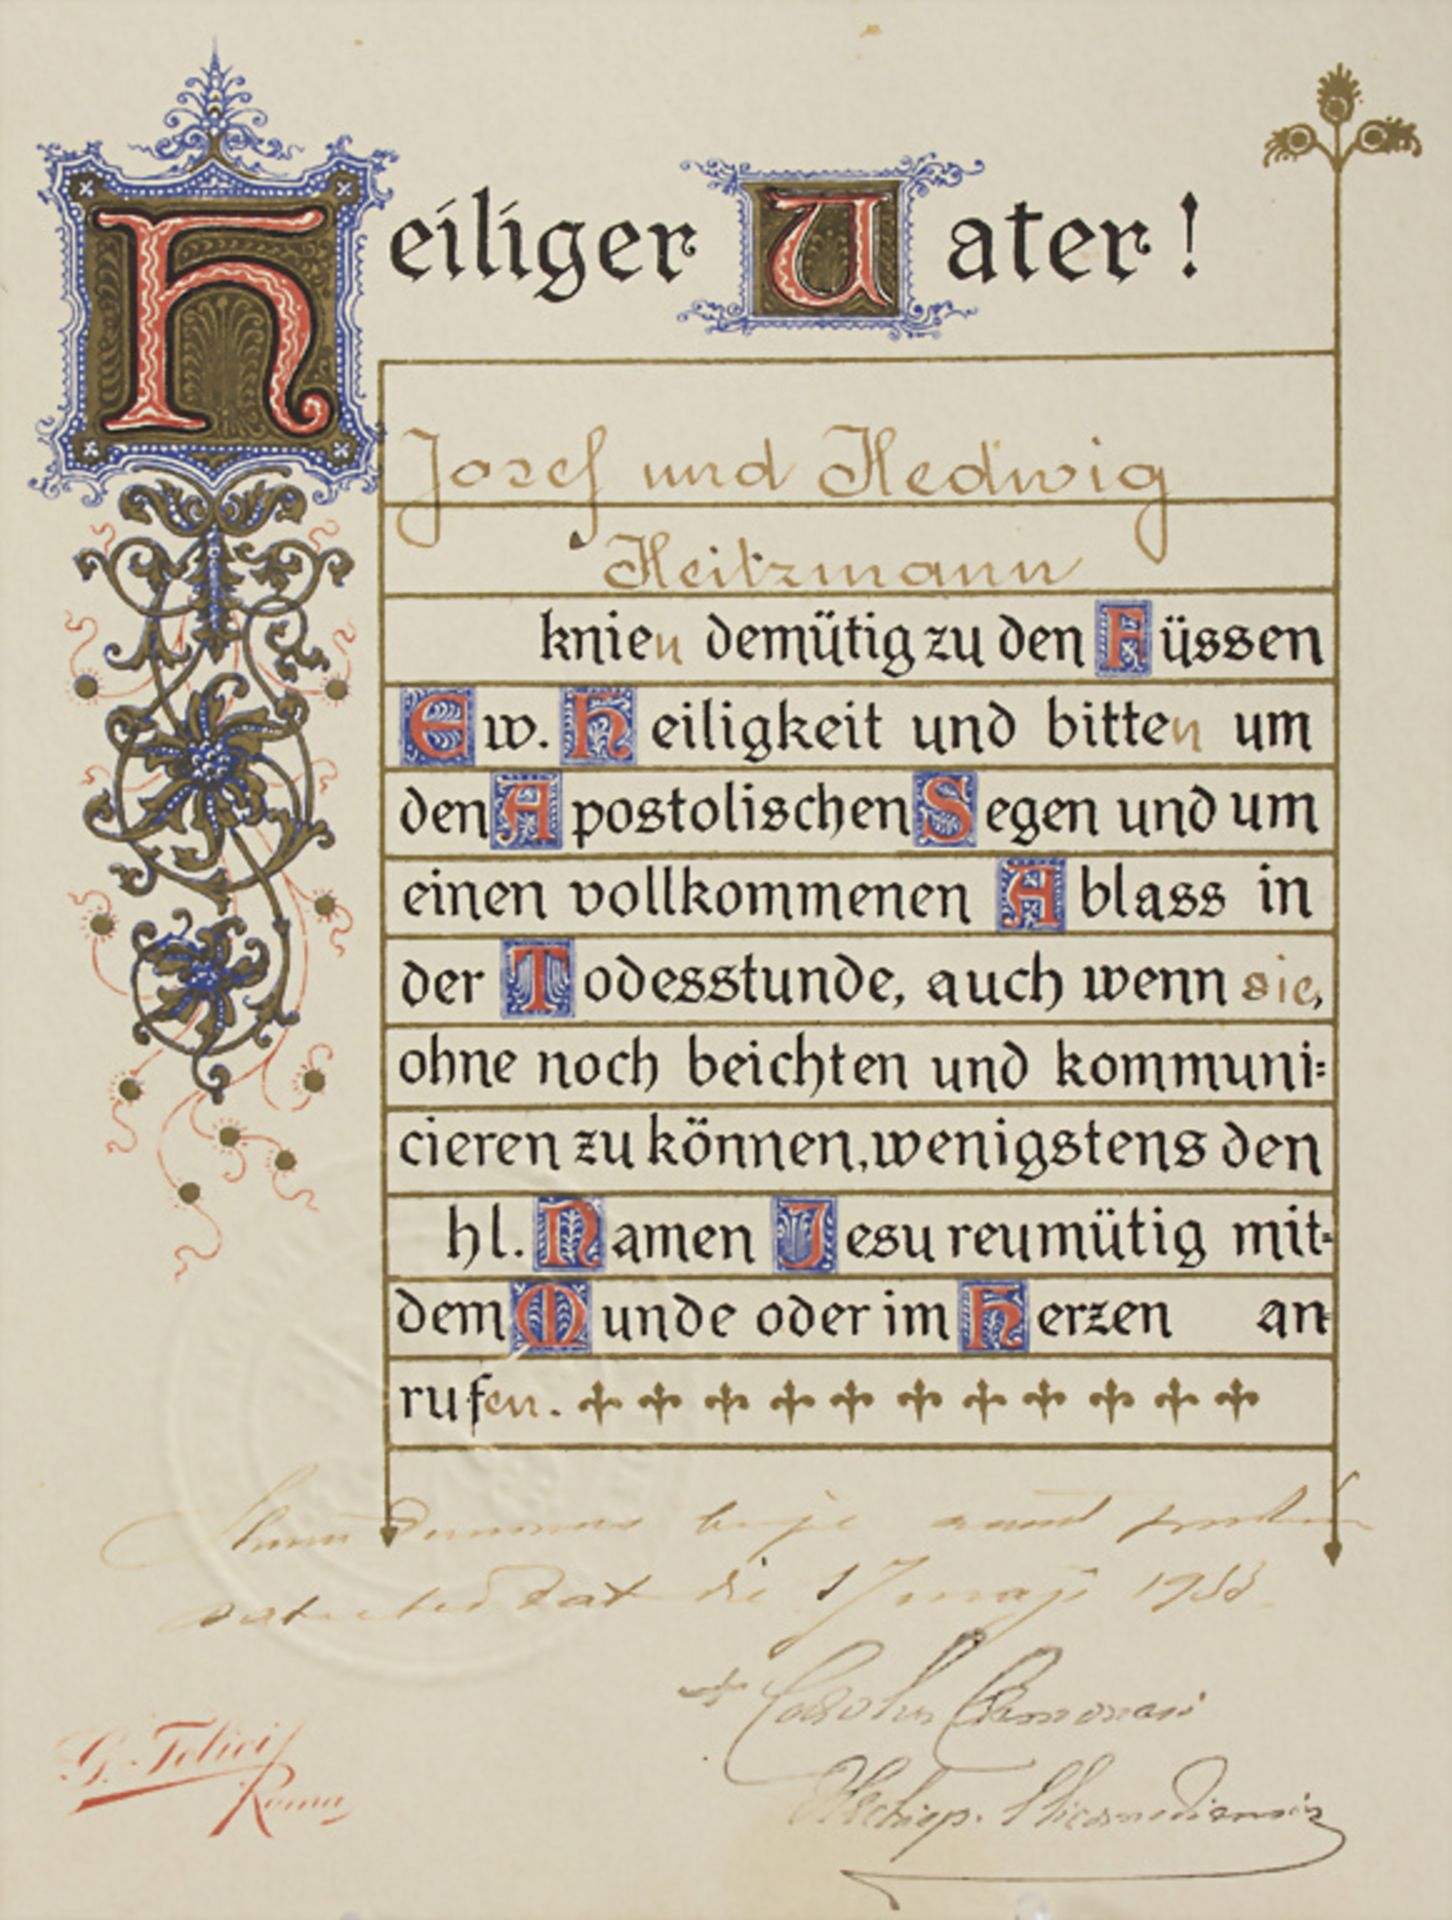 Autograph, Bittschreiben um Apostolischen Segen an den Papst von Johann und Hedwig Heitzmann - Image 3 of 3